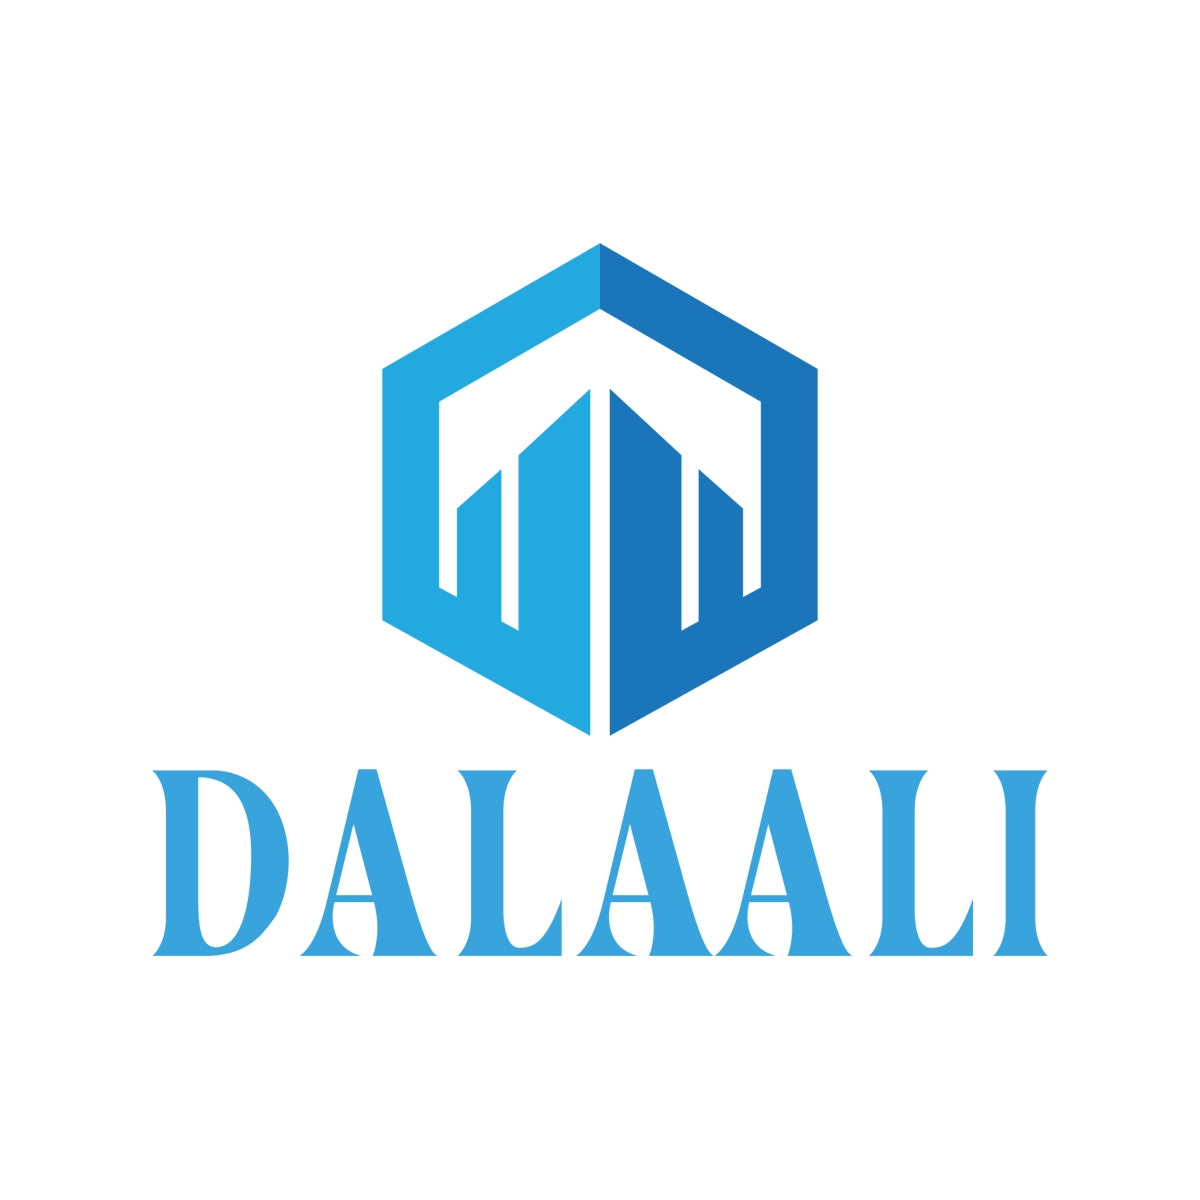 dalaali.com